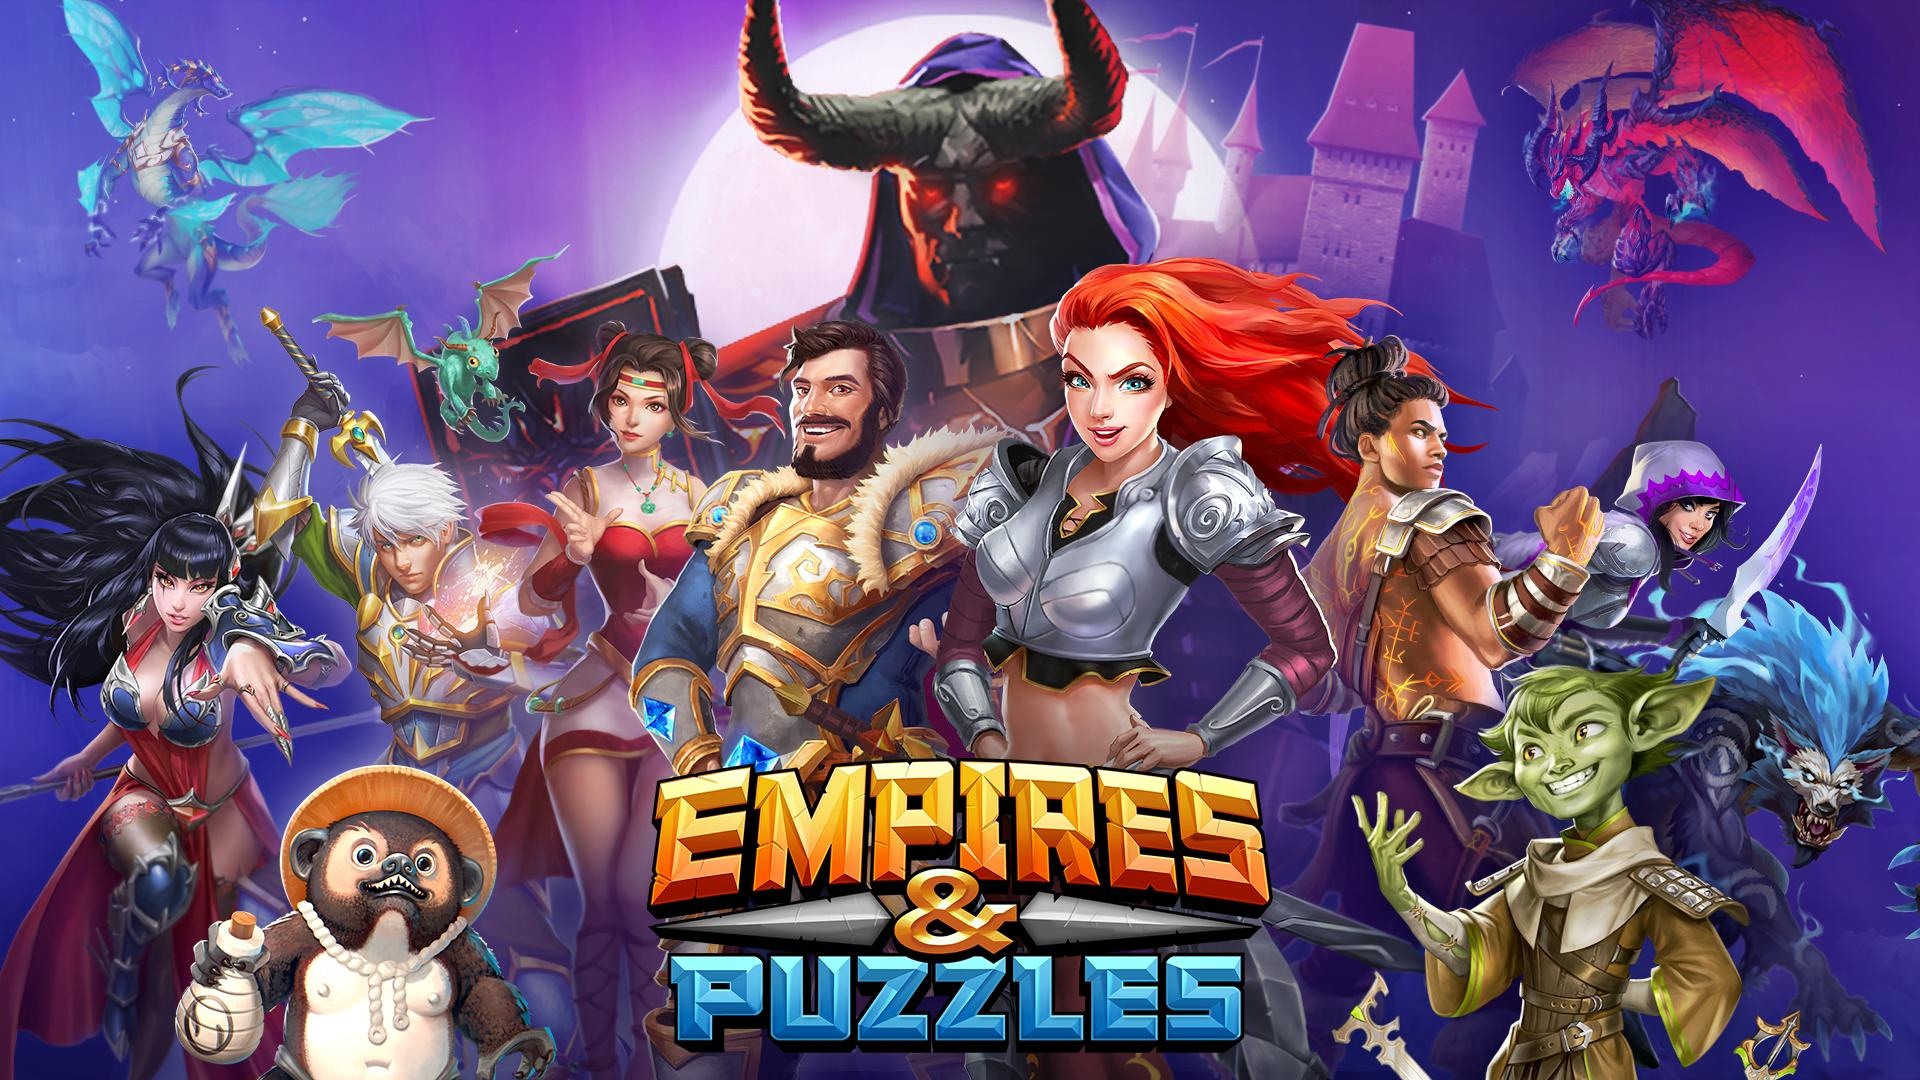 Empires & Puzzles, Epic match 3, 1920x1080 Full HD Desktop